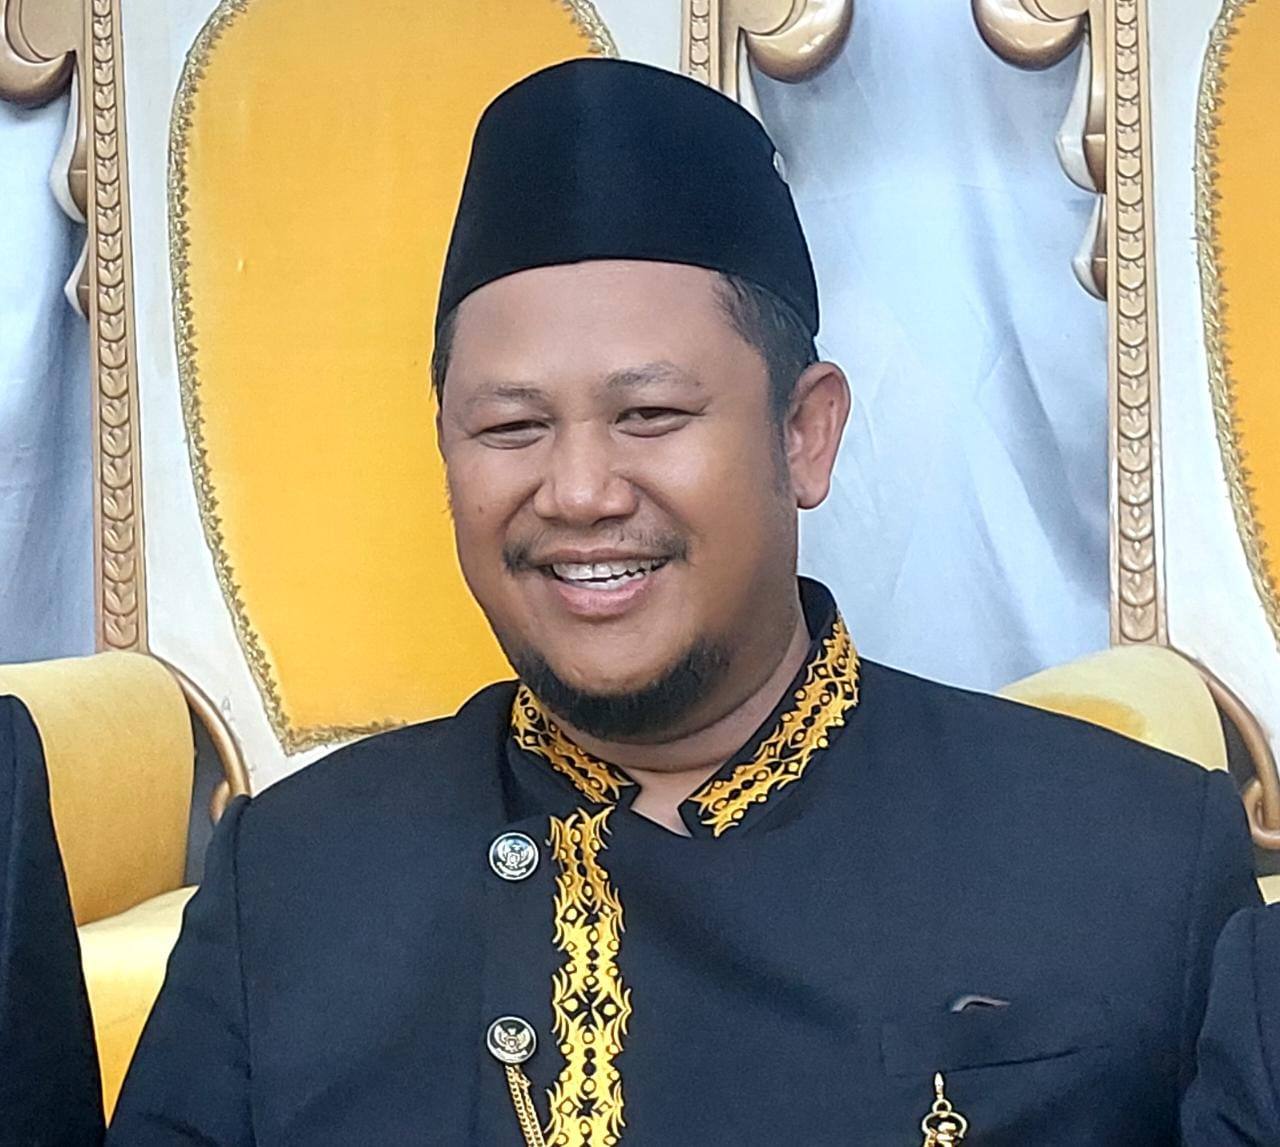 Jelang Belimbur, Ketua DPRD Kukar Imbau Masyarakat Patuhi Tata Krama